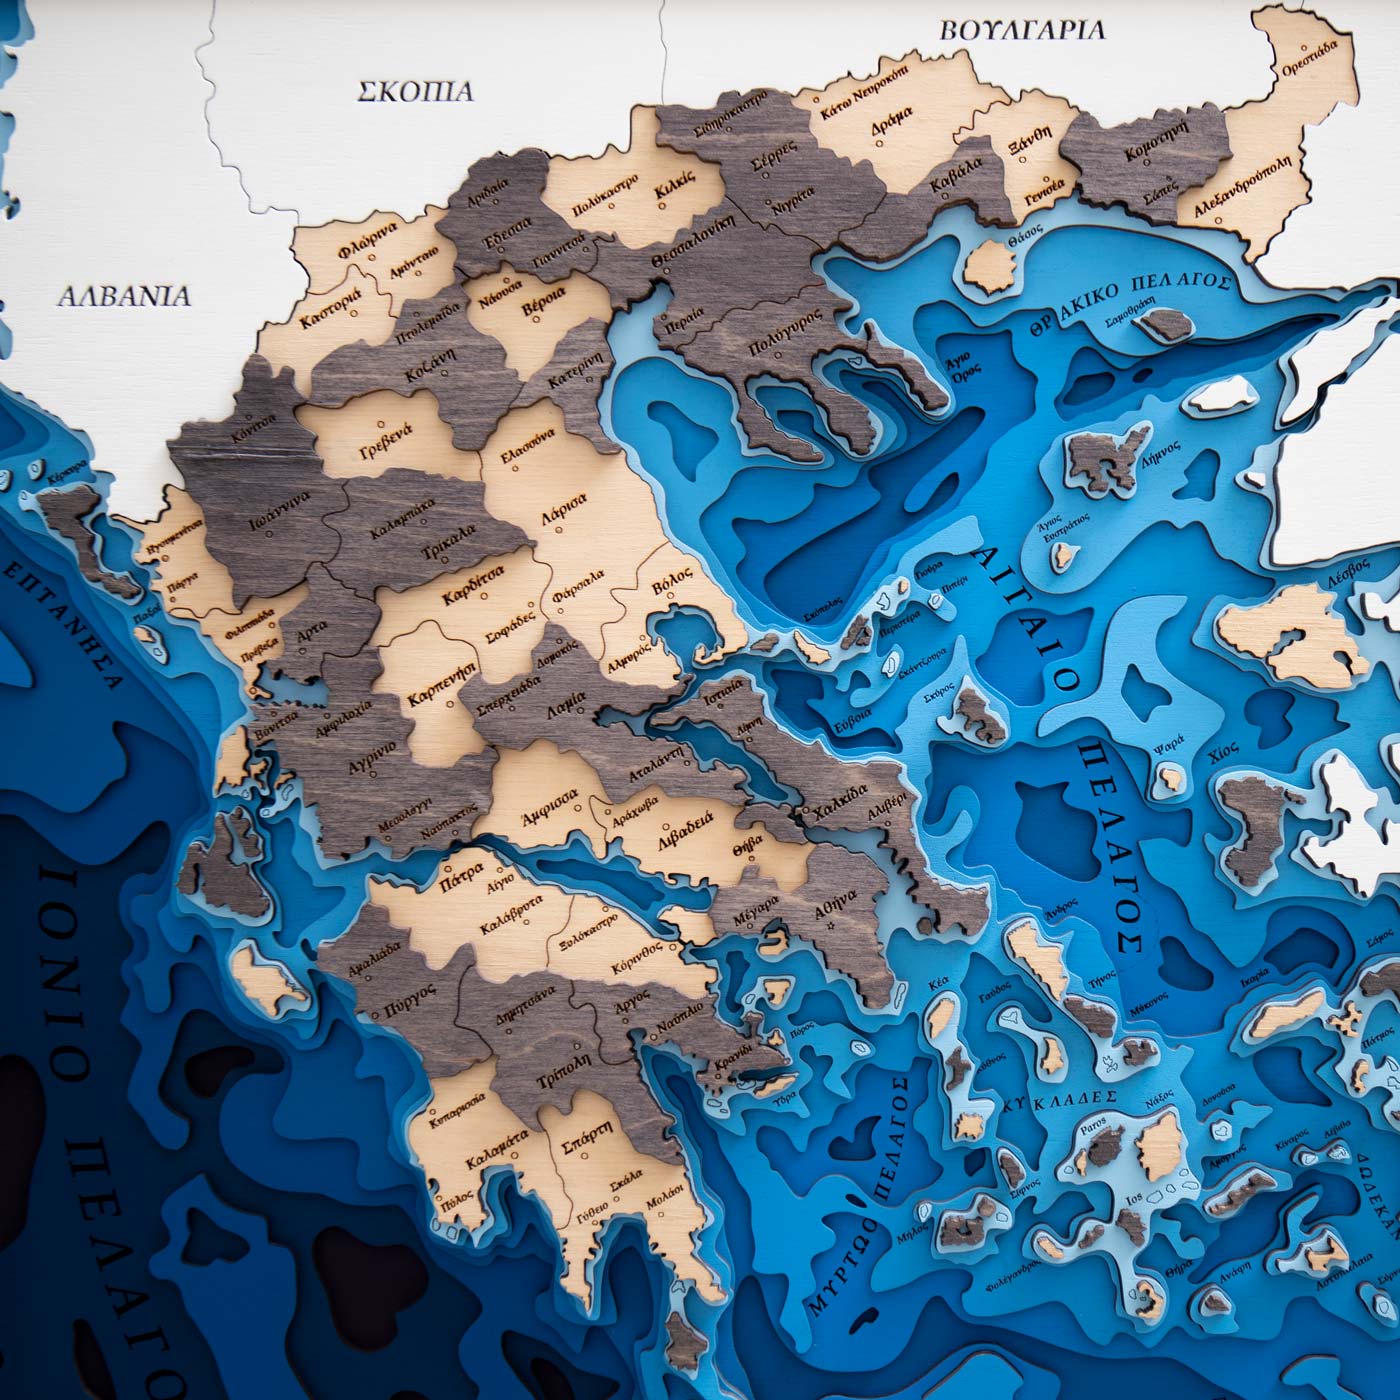 Βαθυμετρικός ξύλινος χάρτης πολλαπλών επιπέδων της Ελλάδας σε wenge. Ksilart